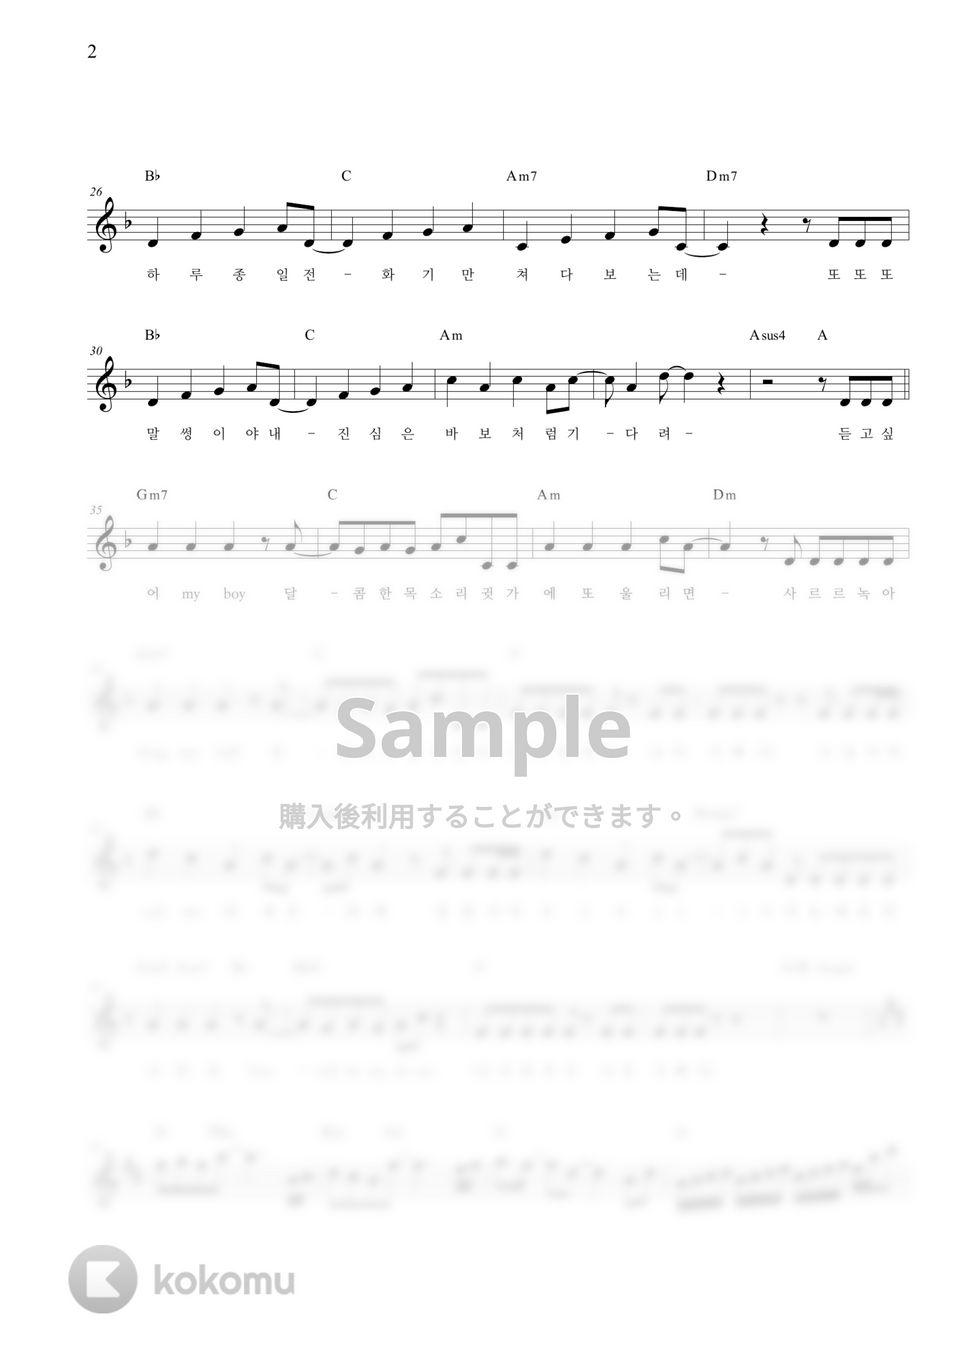 OMEGA Ⅲ - Call Me (8282119) [IMITATION X OMEGA Ⅲ] Original Edition (Code) by KOKOMU Original